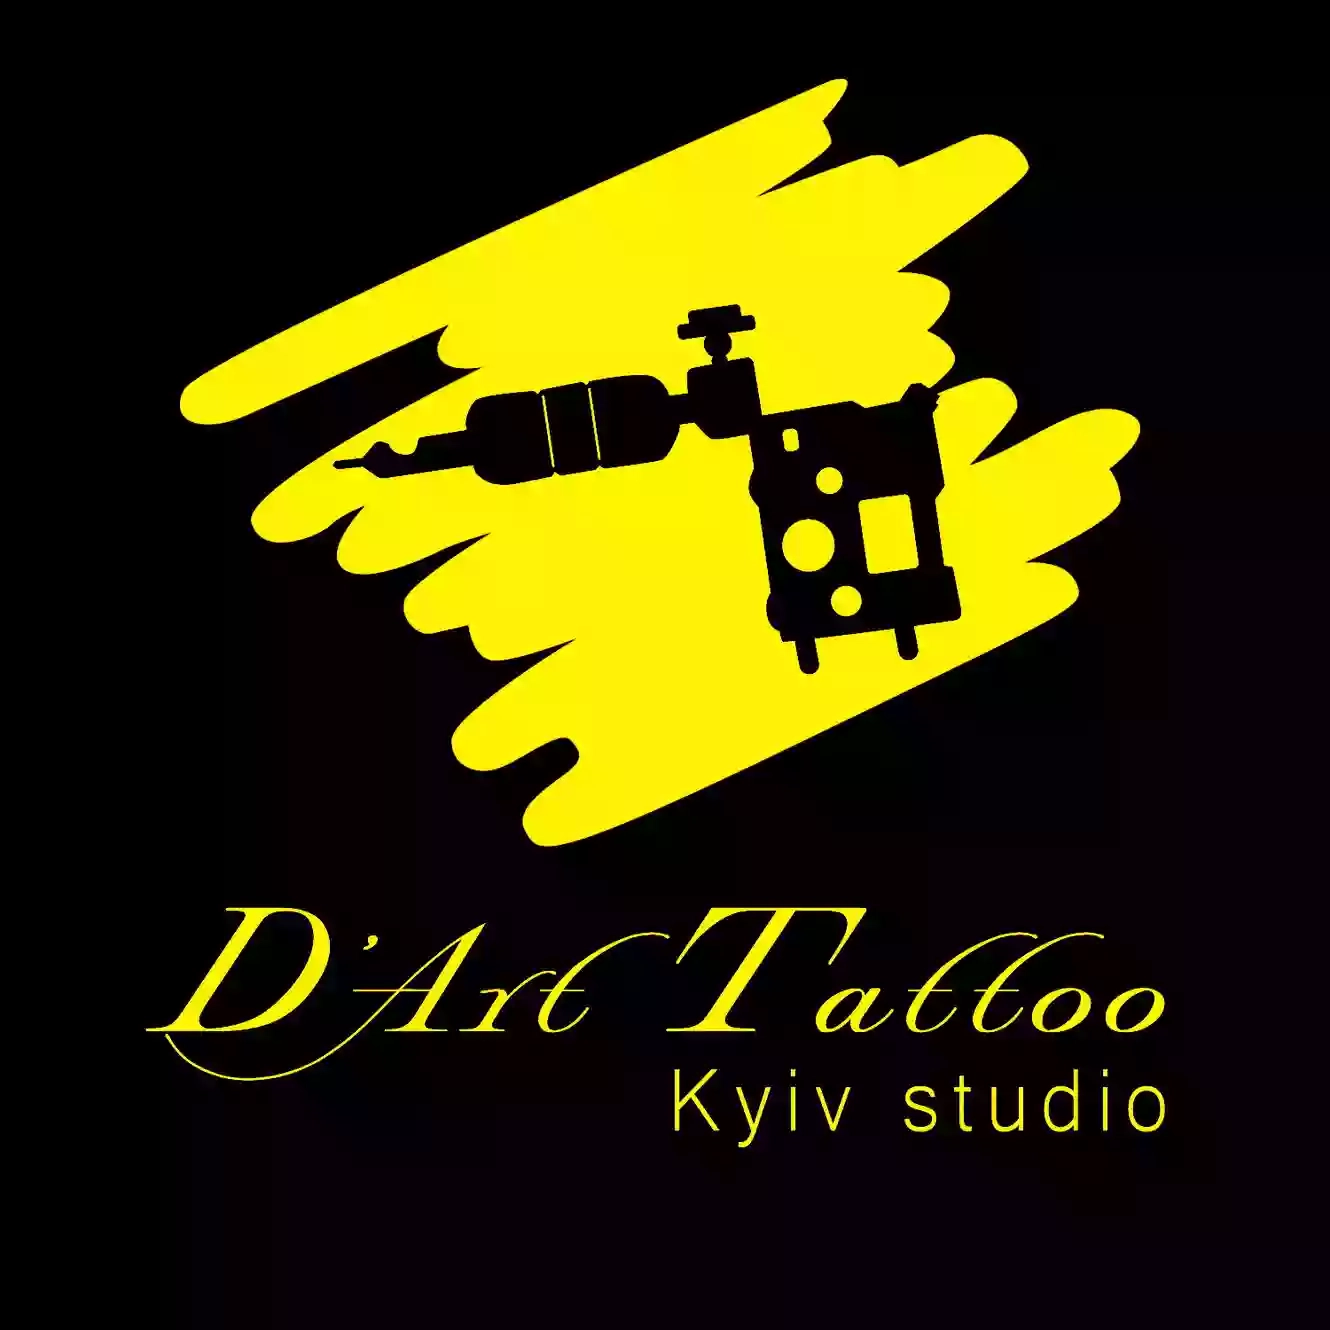 D’art Tattoo Kyiv Studio